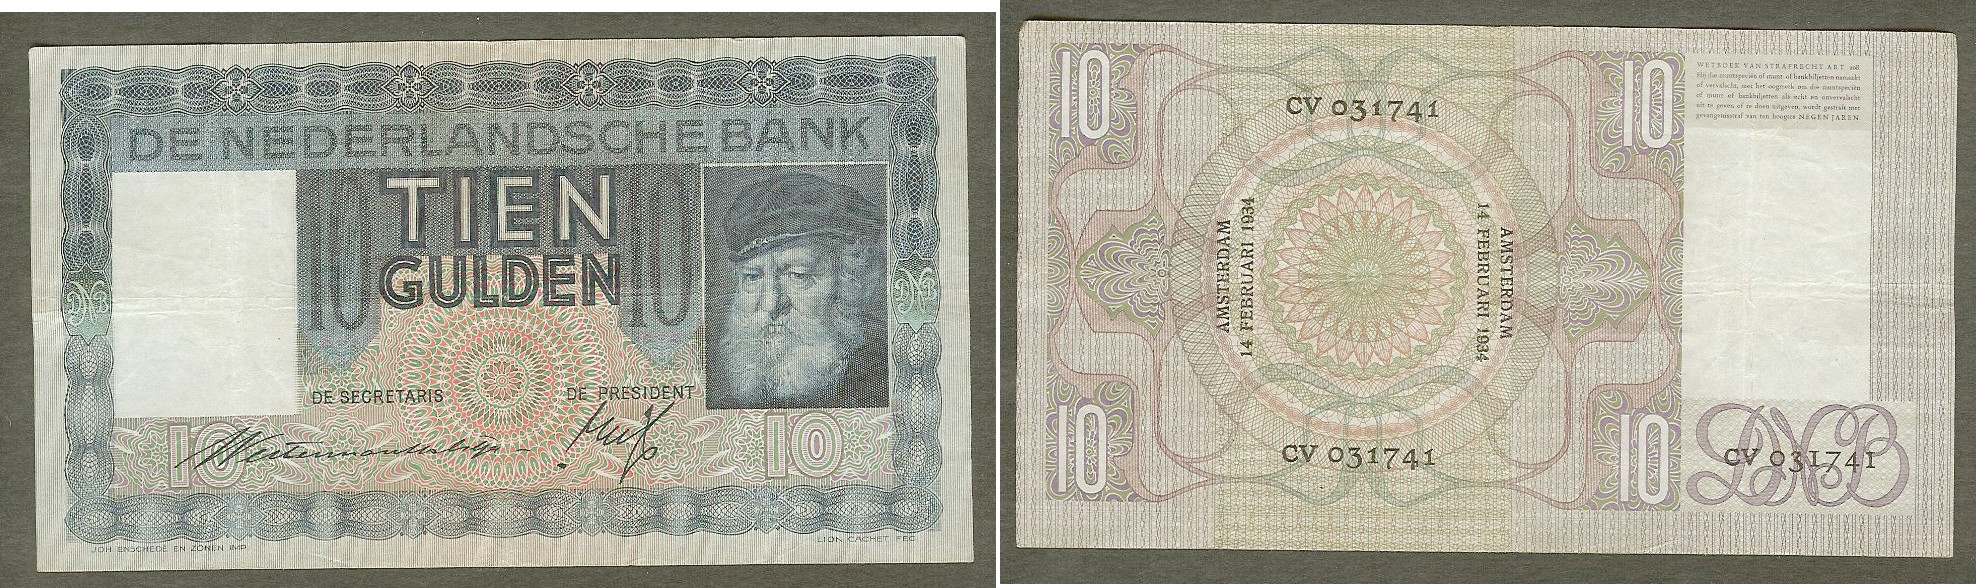 10 Gulden PAYS-BAS 14.2.1934 TTB